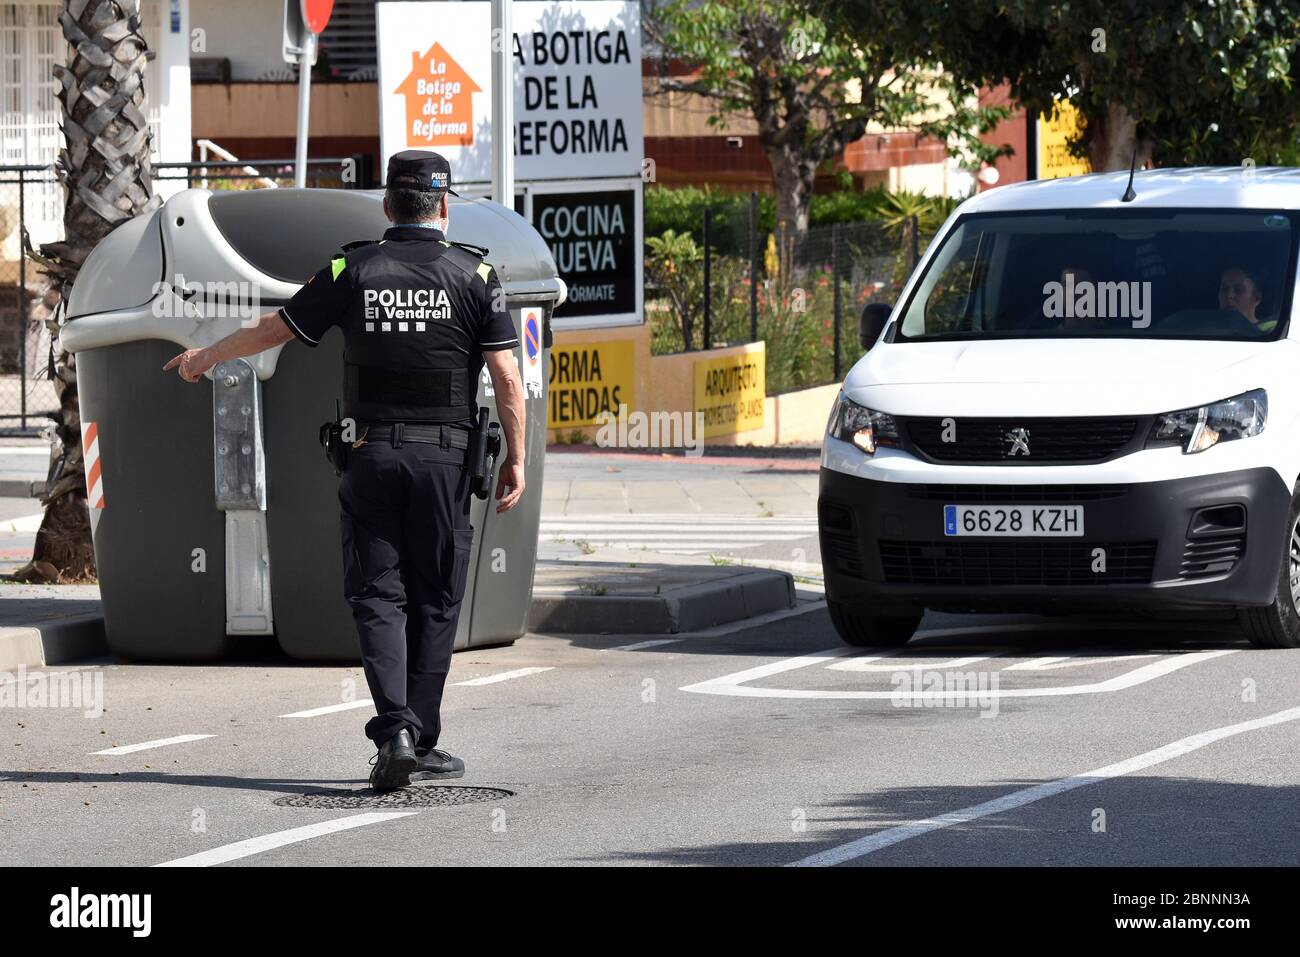 Vendrell, Spanien. April 2020. Ein Polizist mit einer Operationsmaske hält ein Fahrzeug an einem Mobilitätskontrollpunkt an.die örtliche Polizei von Vendrell führt auf der Straße eine Mobilitätskontrolle durch, um sicherzustellen, dass die Menschen nicht in ihre zweiten Wohnungen gelangen, was während der "Phase eins" des Endes der Haft möglich ist. Quelle: Ramon Costa/SOPA Images/ZUMA Wire/Alamy Live News Stockfoto